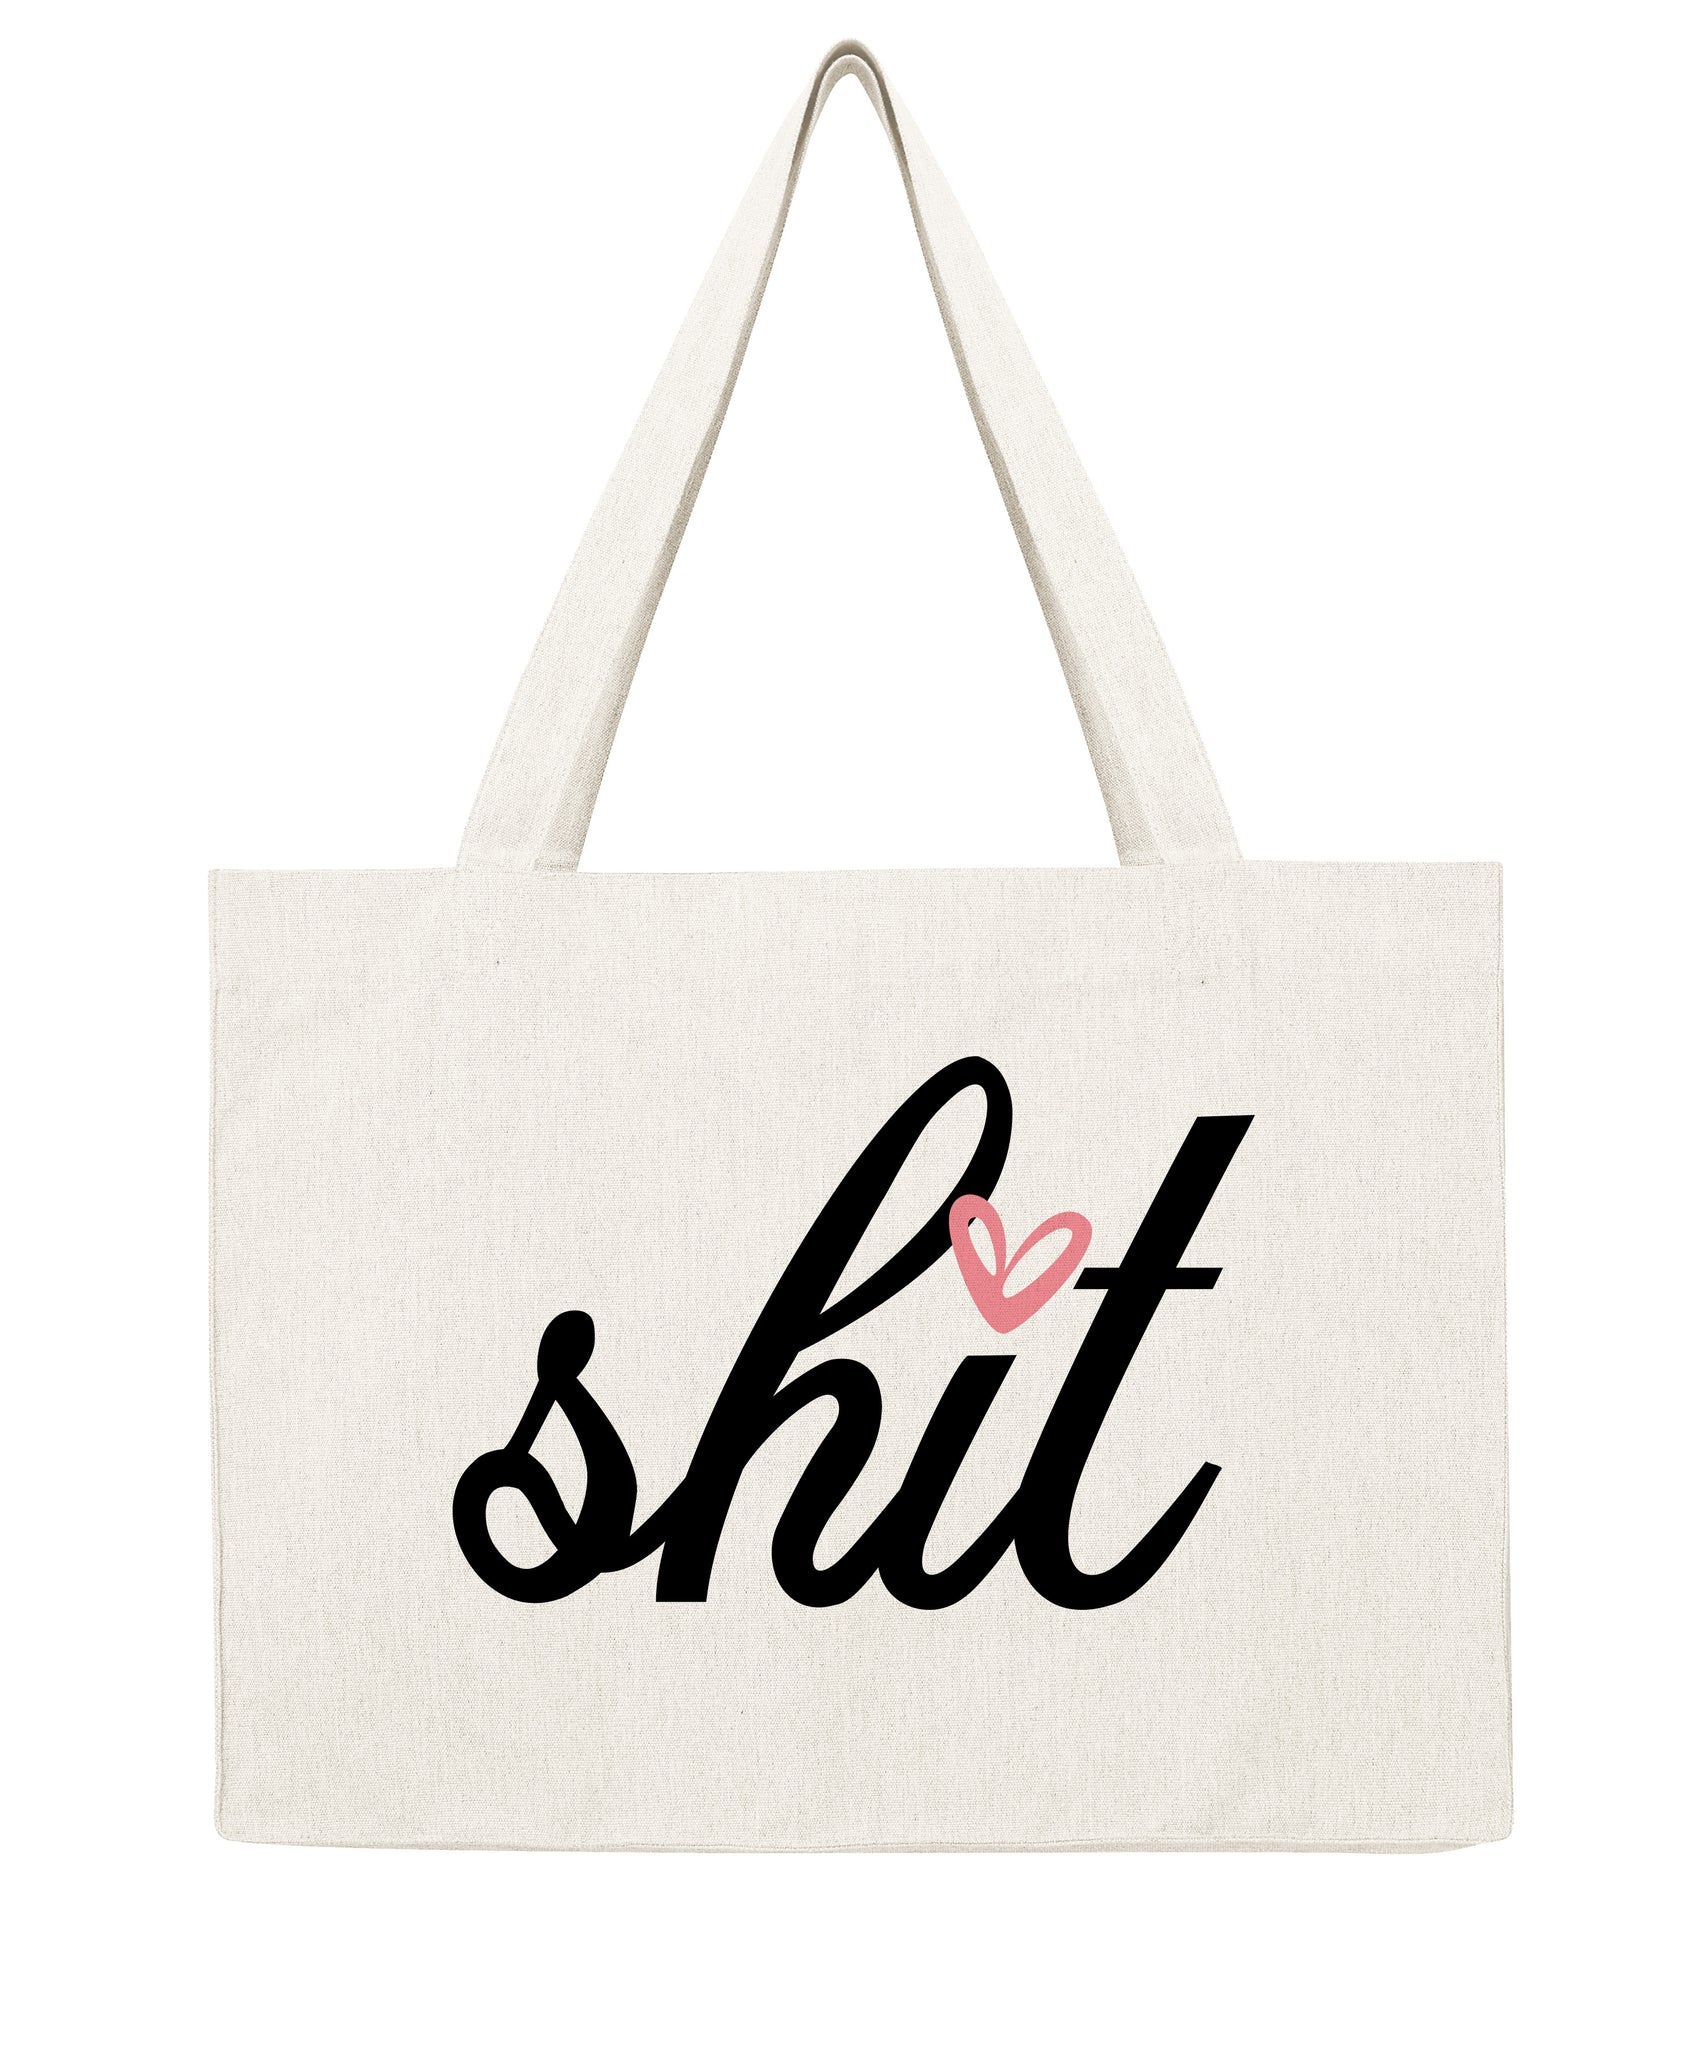 Shit - Shopping bag-Sacs-Atelier Amelot